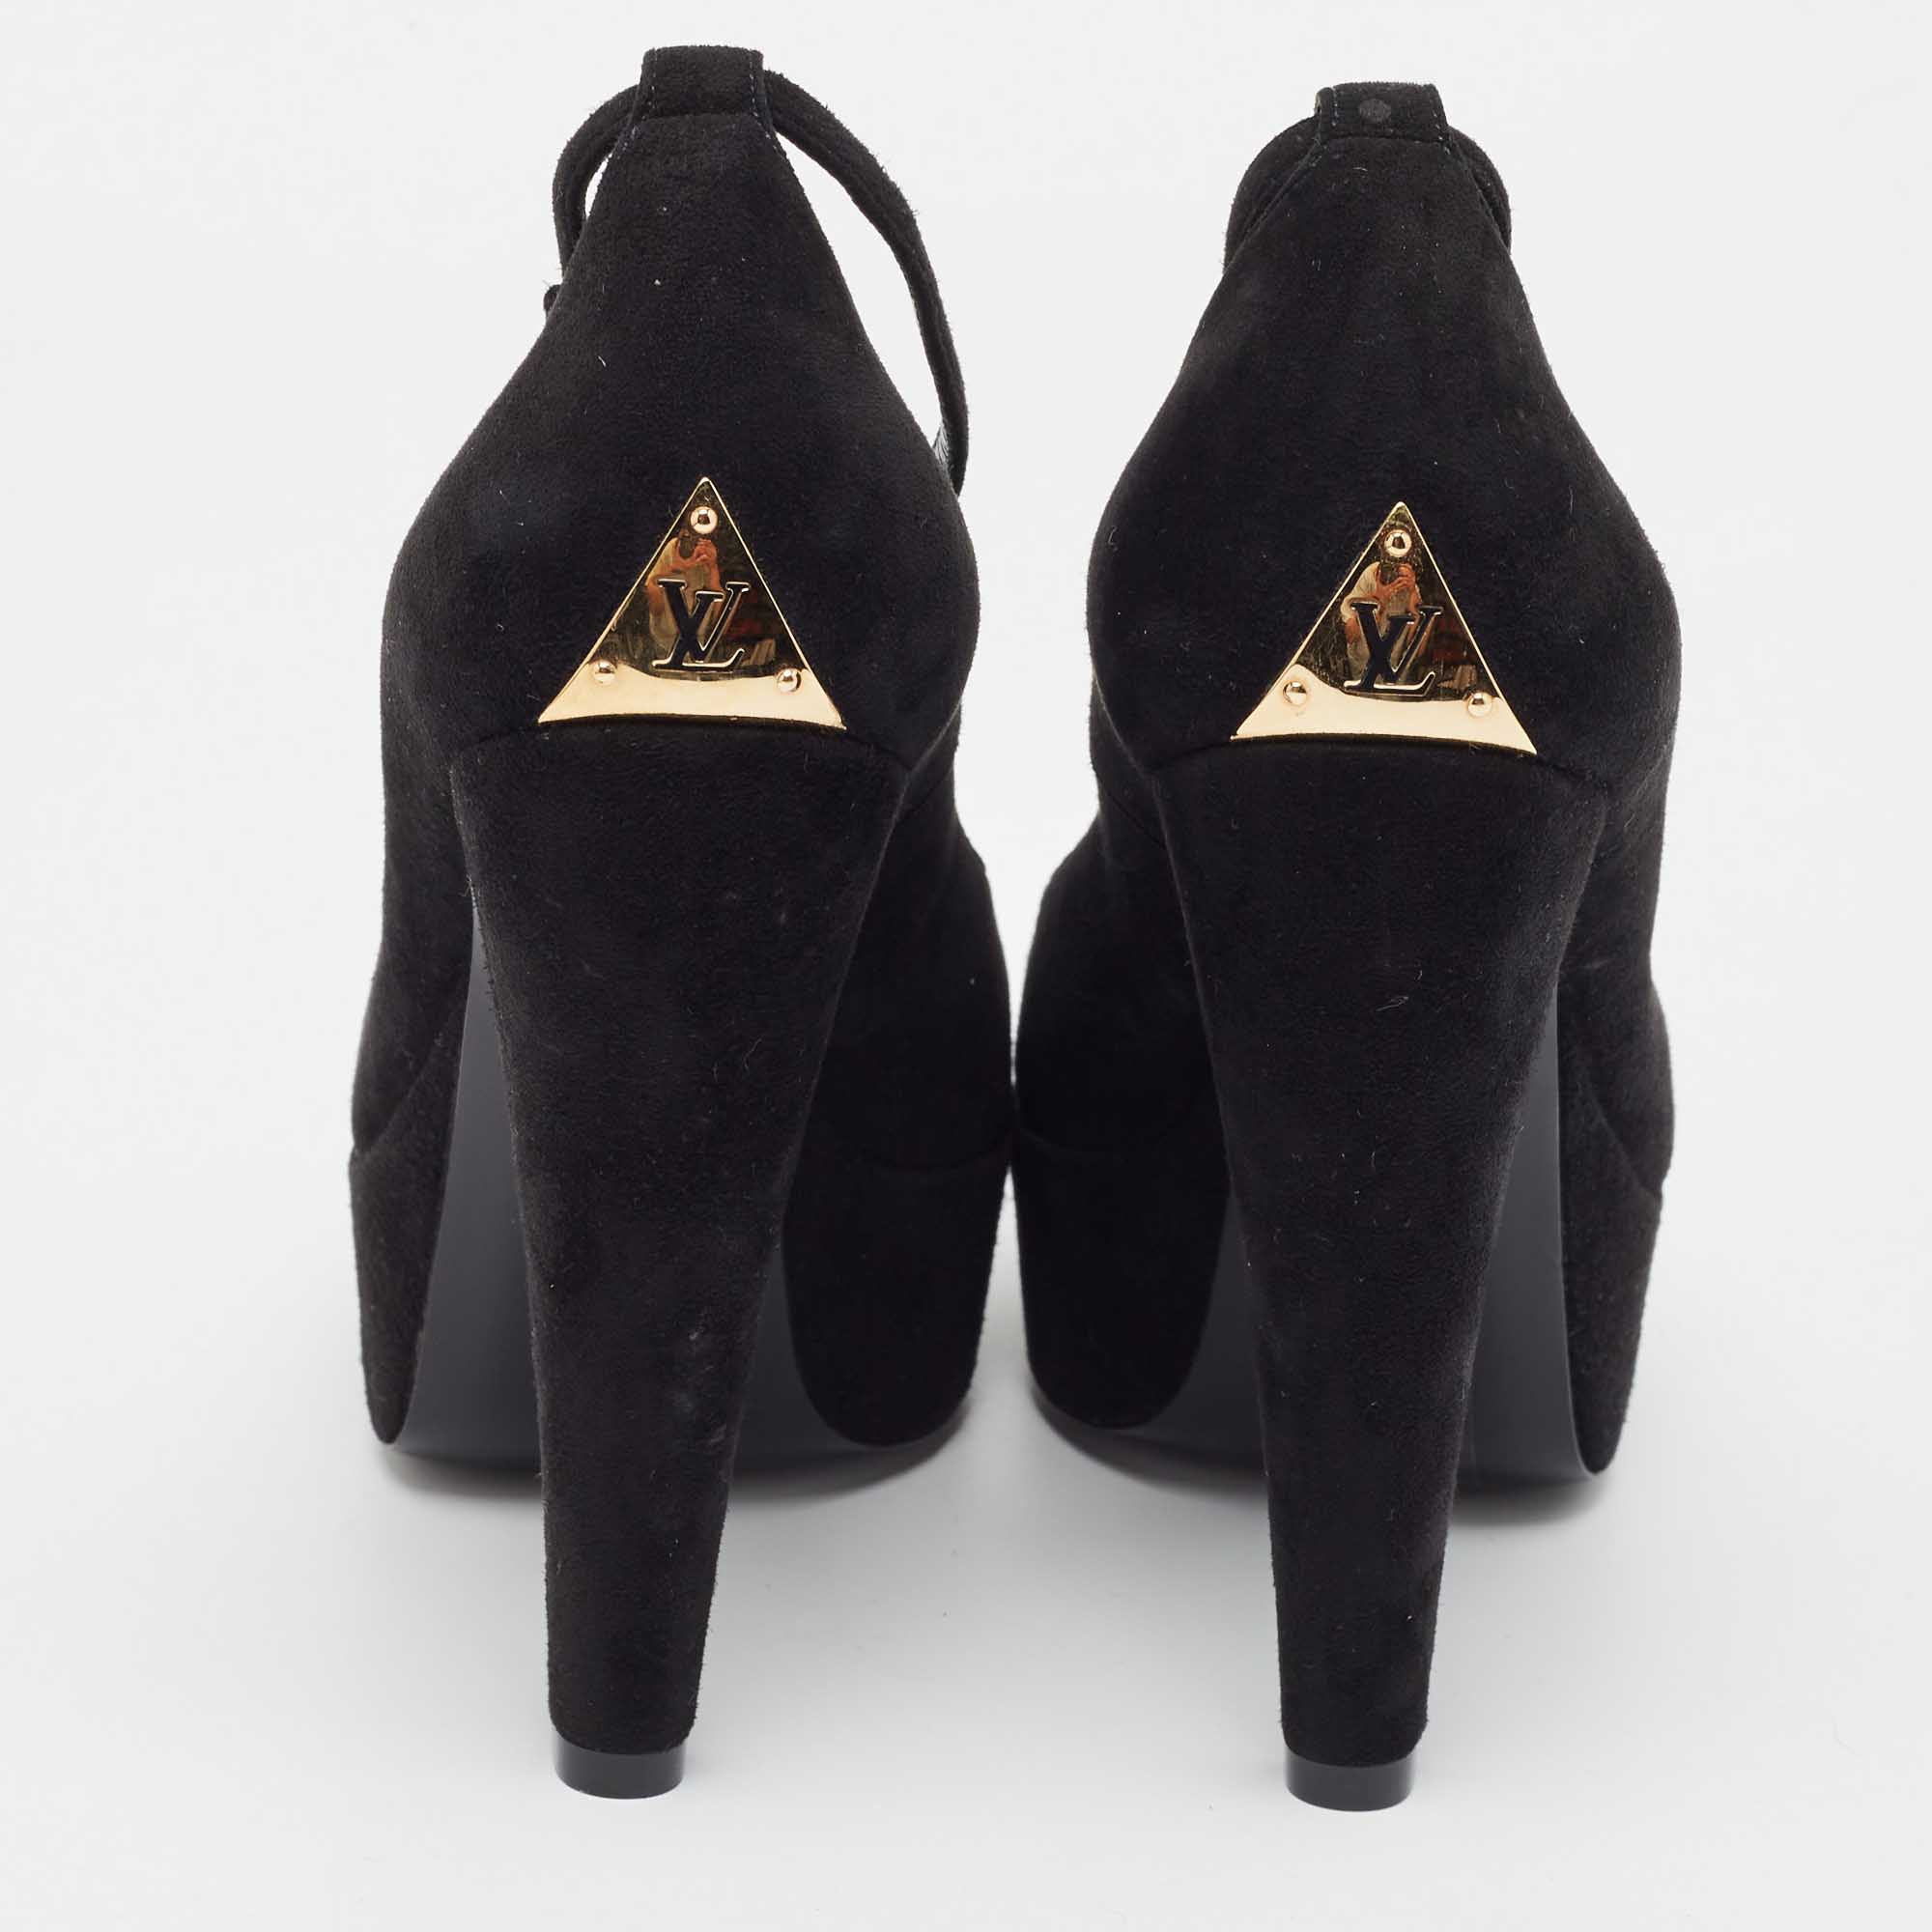 Louis Vuitton Black Suede Ankle Strap Pumps Size 37